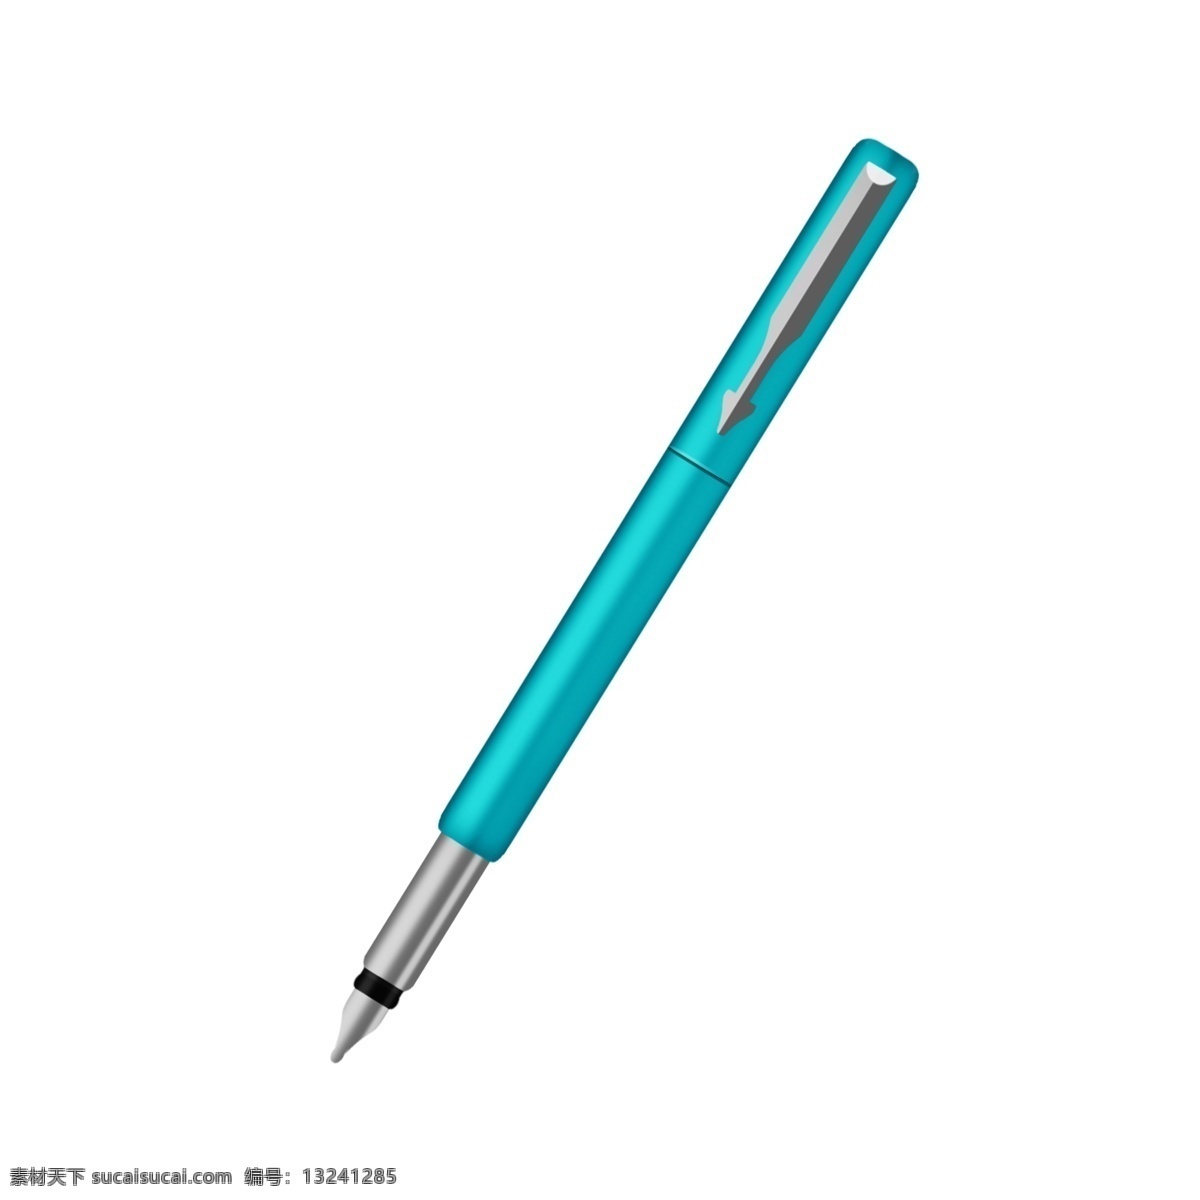 蓝色 中性笔 插画 蓝色的中性笔 漂亮的中性笔 中性笔装饰 中性笔插画 立体中性笔 卡通中性笔